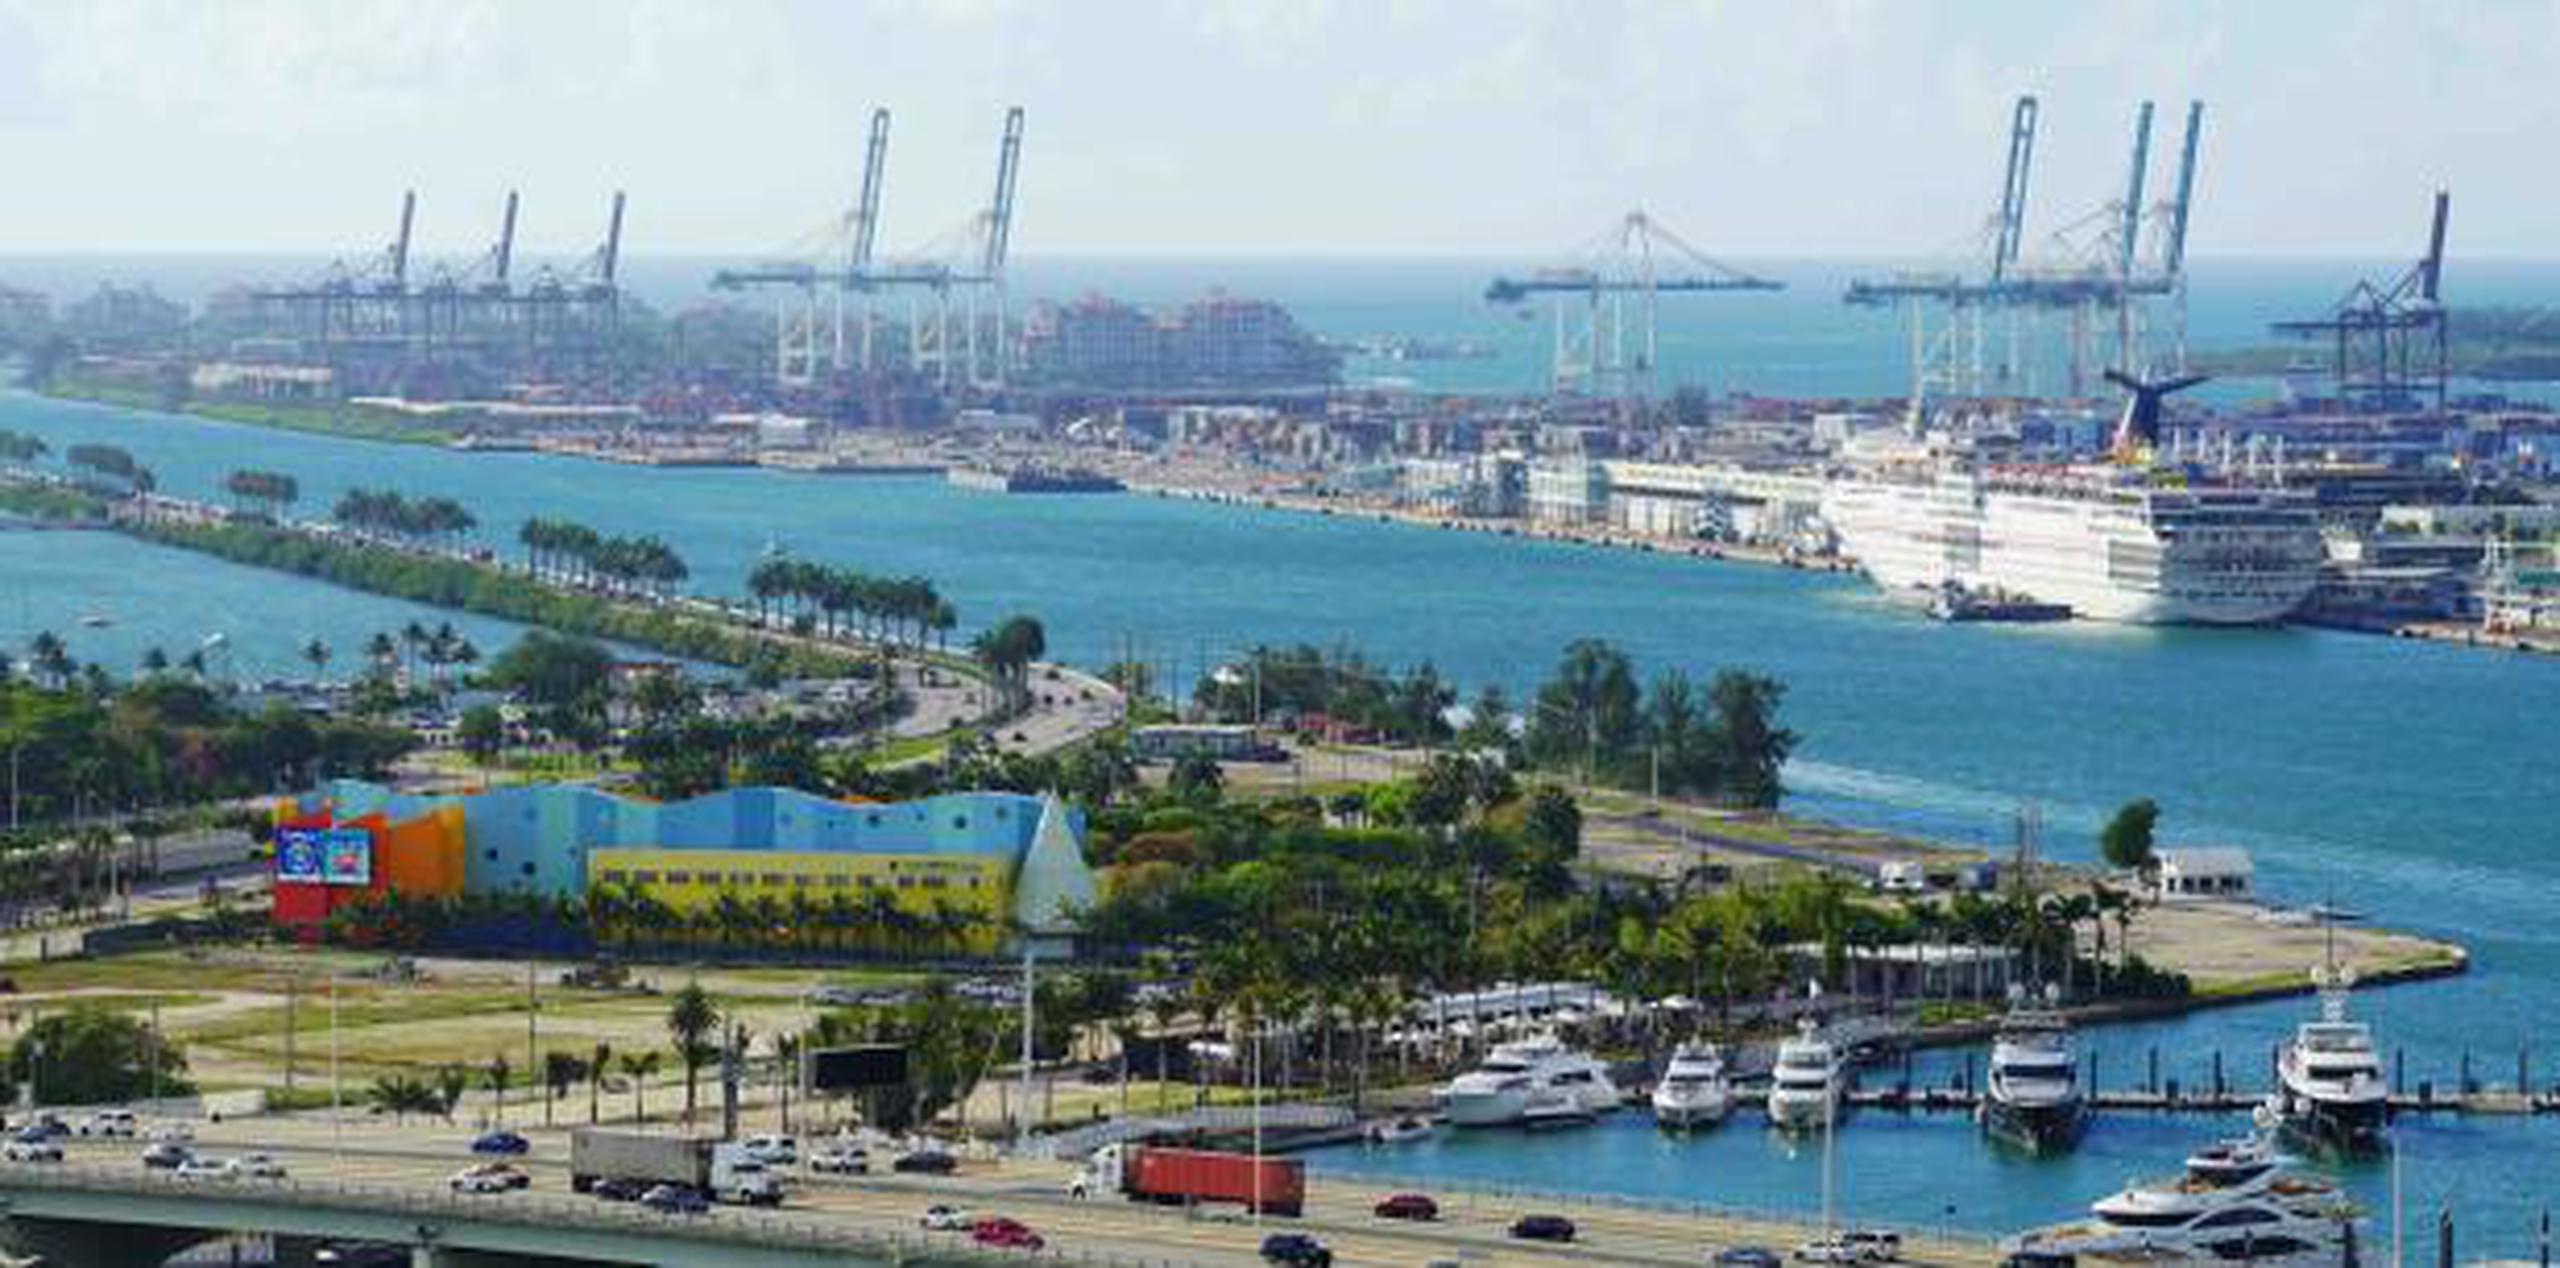 PortMiami recibe más de 5.5 millones de pasajeros de cruceros al año. (Shutterstock)